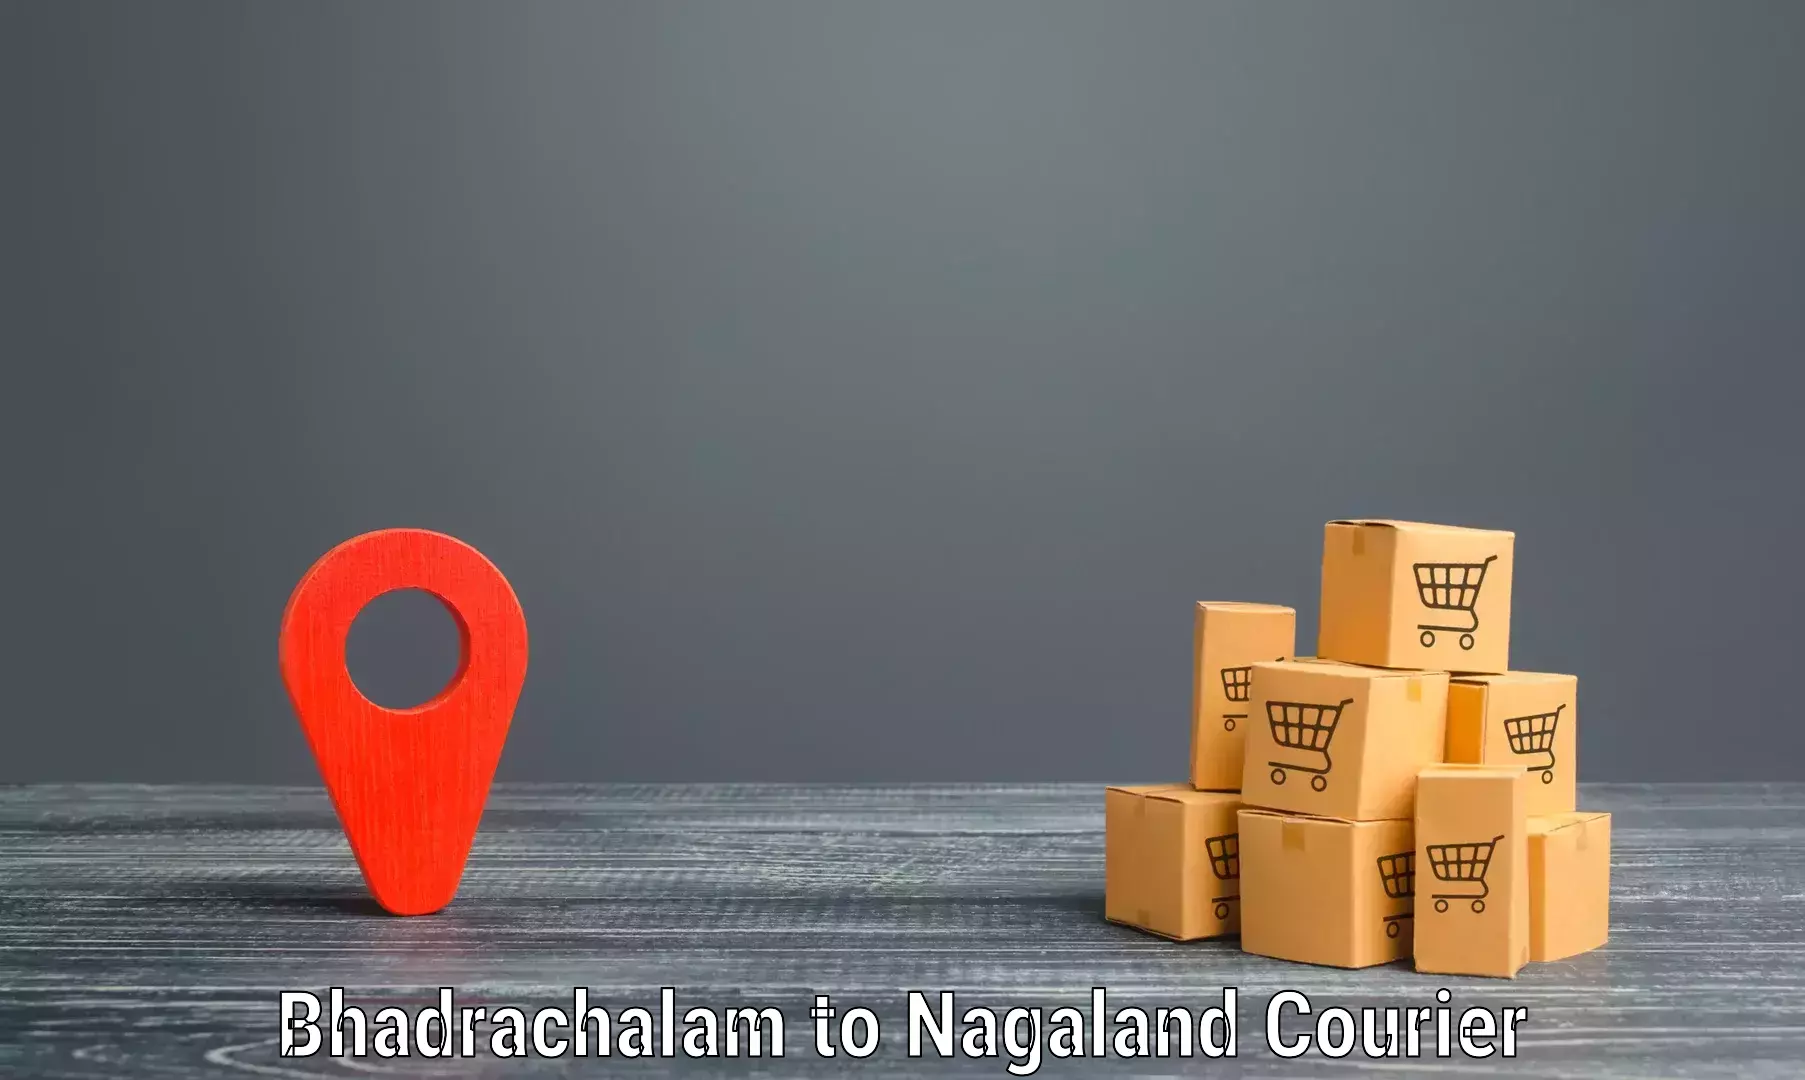 Urban courier service Bhadrachalam to Tuensang